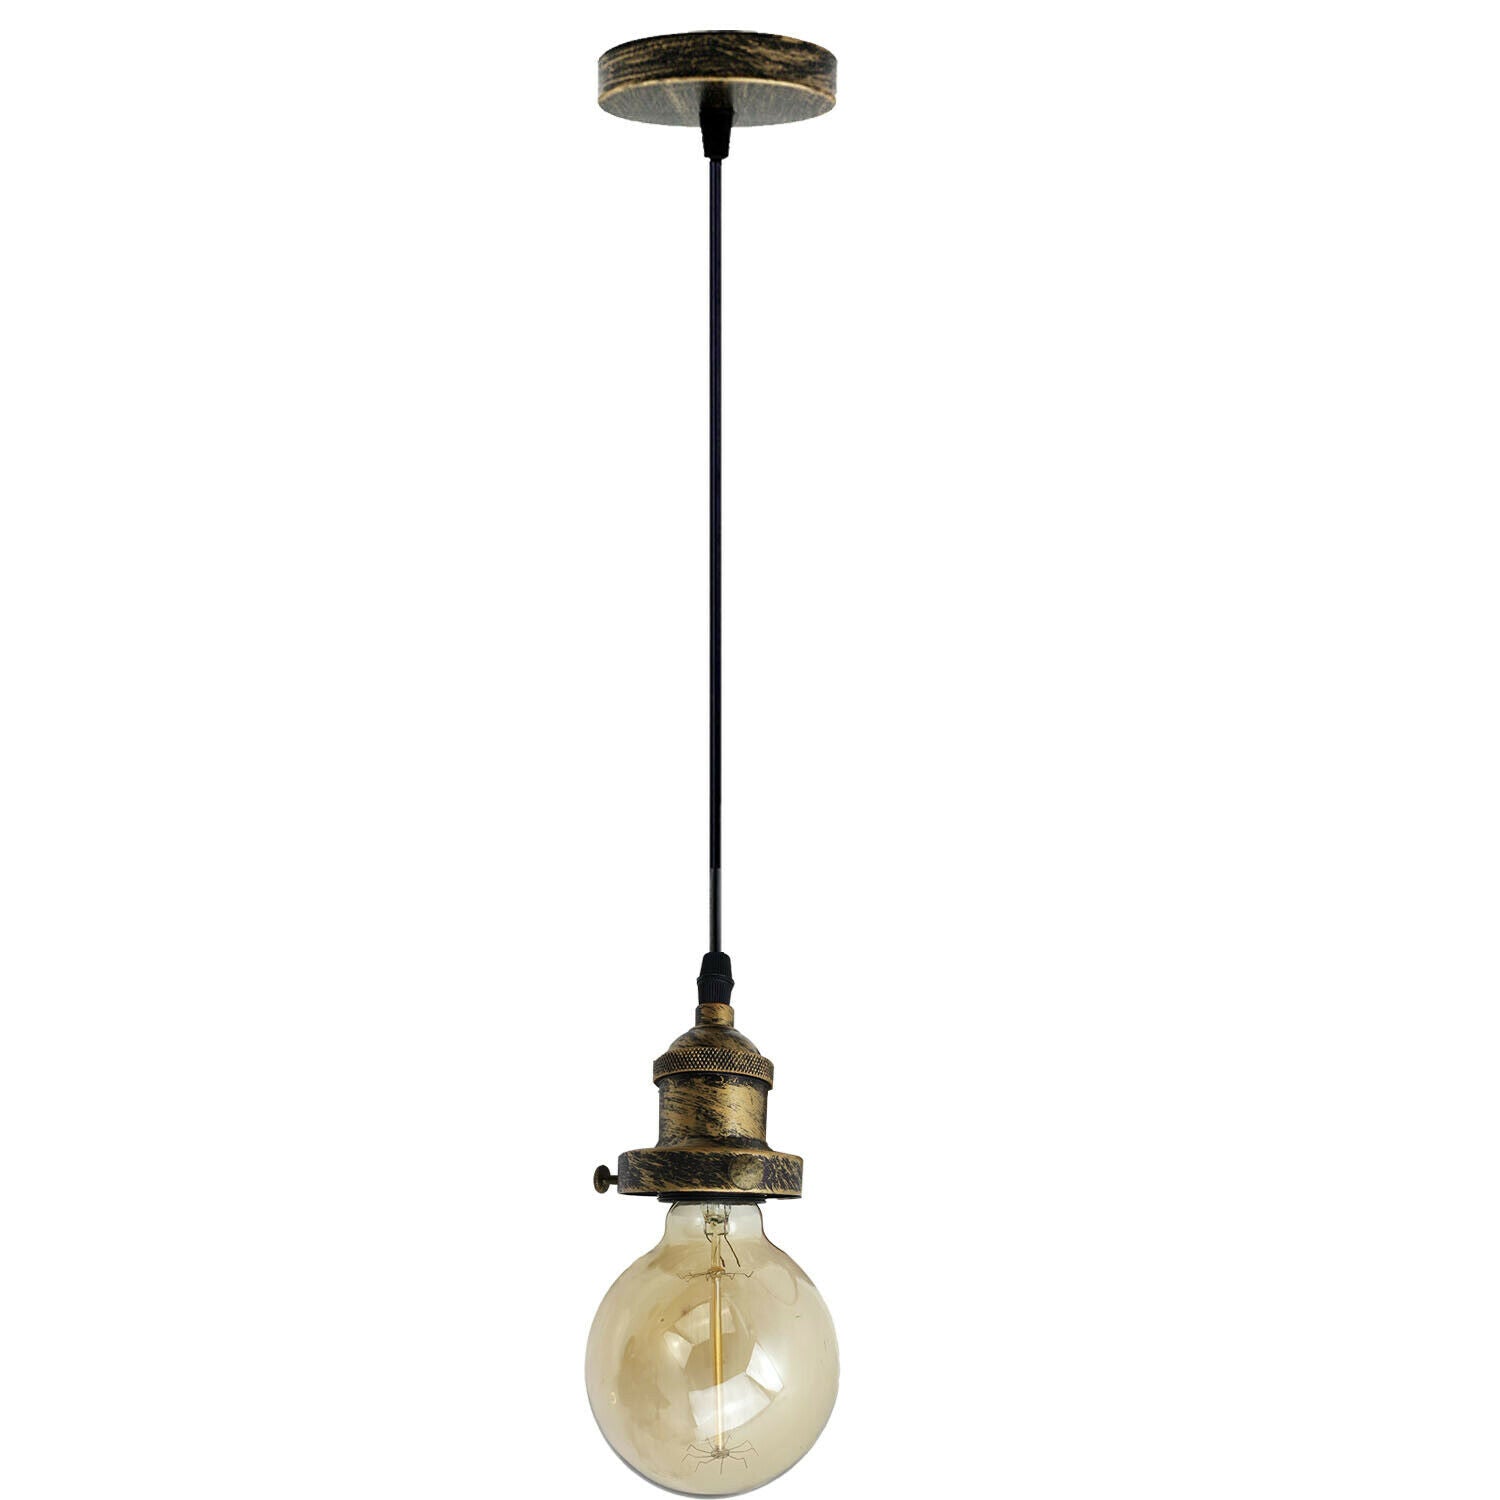 E27 Ceiling Rose Light Fitting Vintage Industrial Pendant Lamp Bulb Holder Light~2207